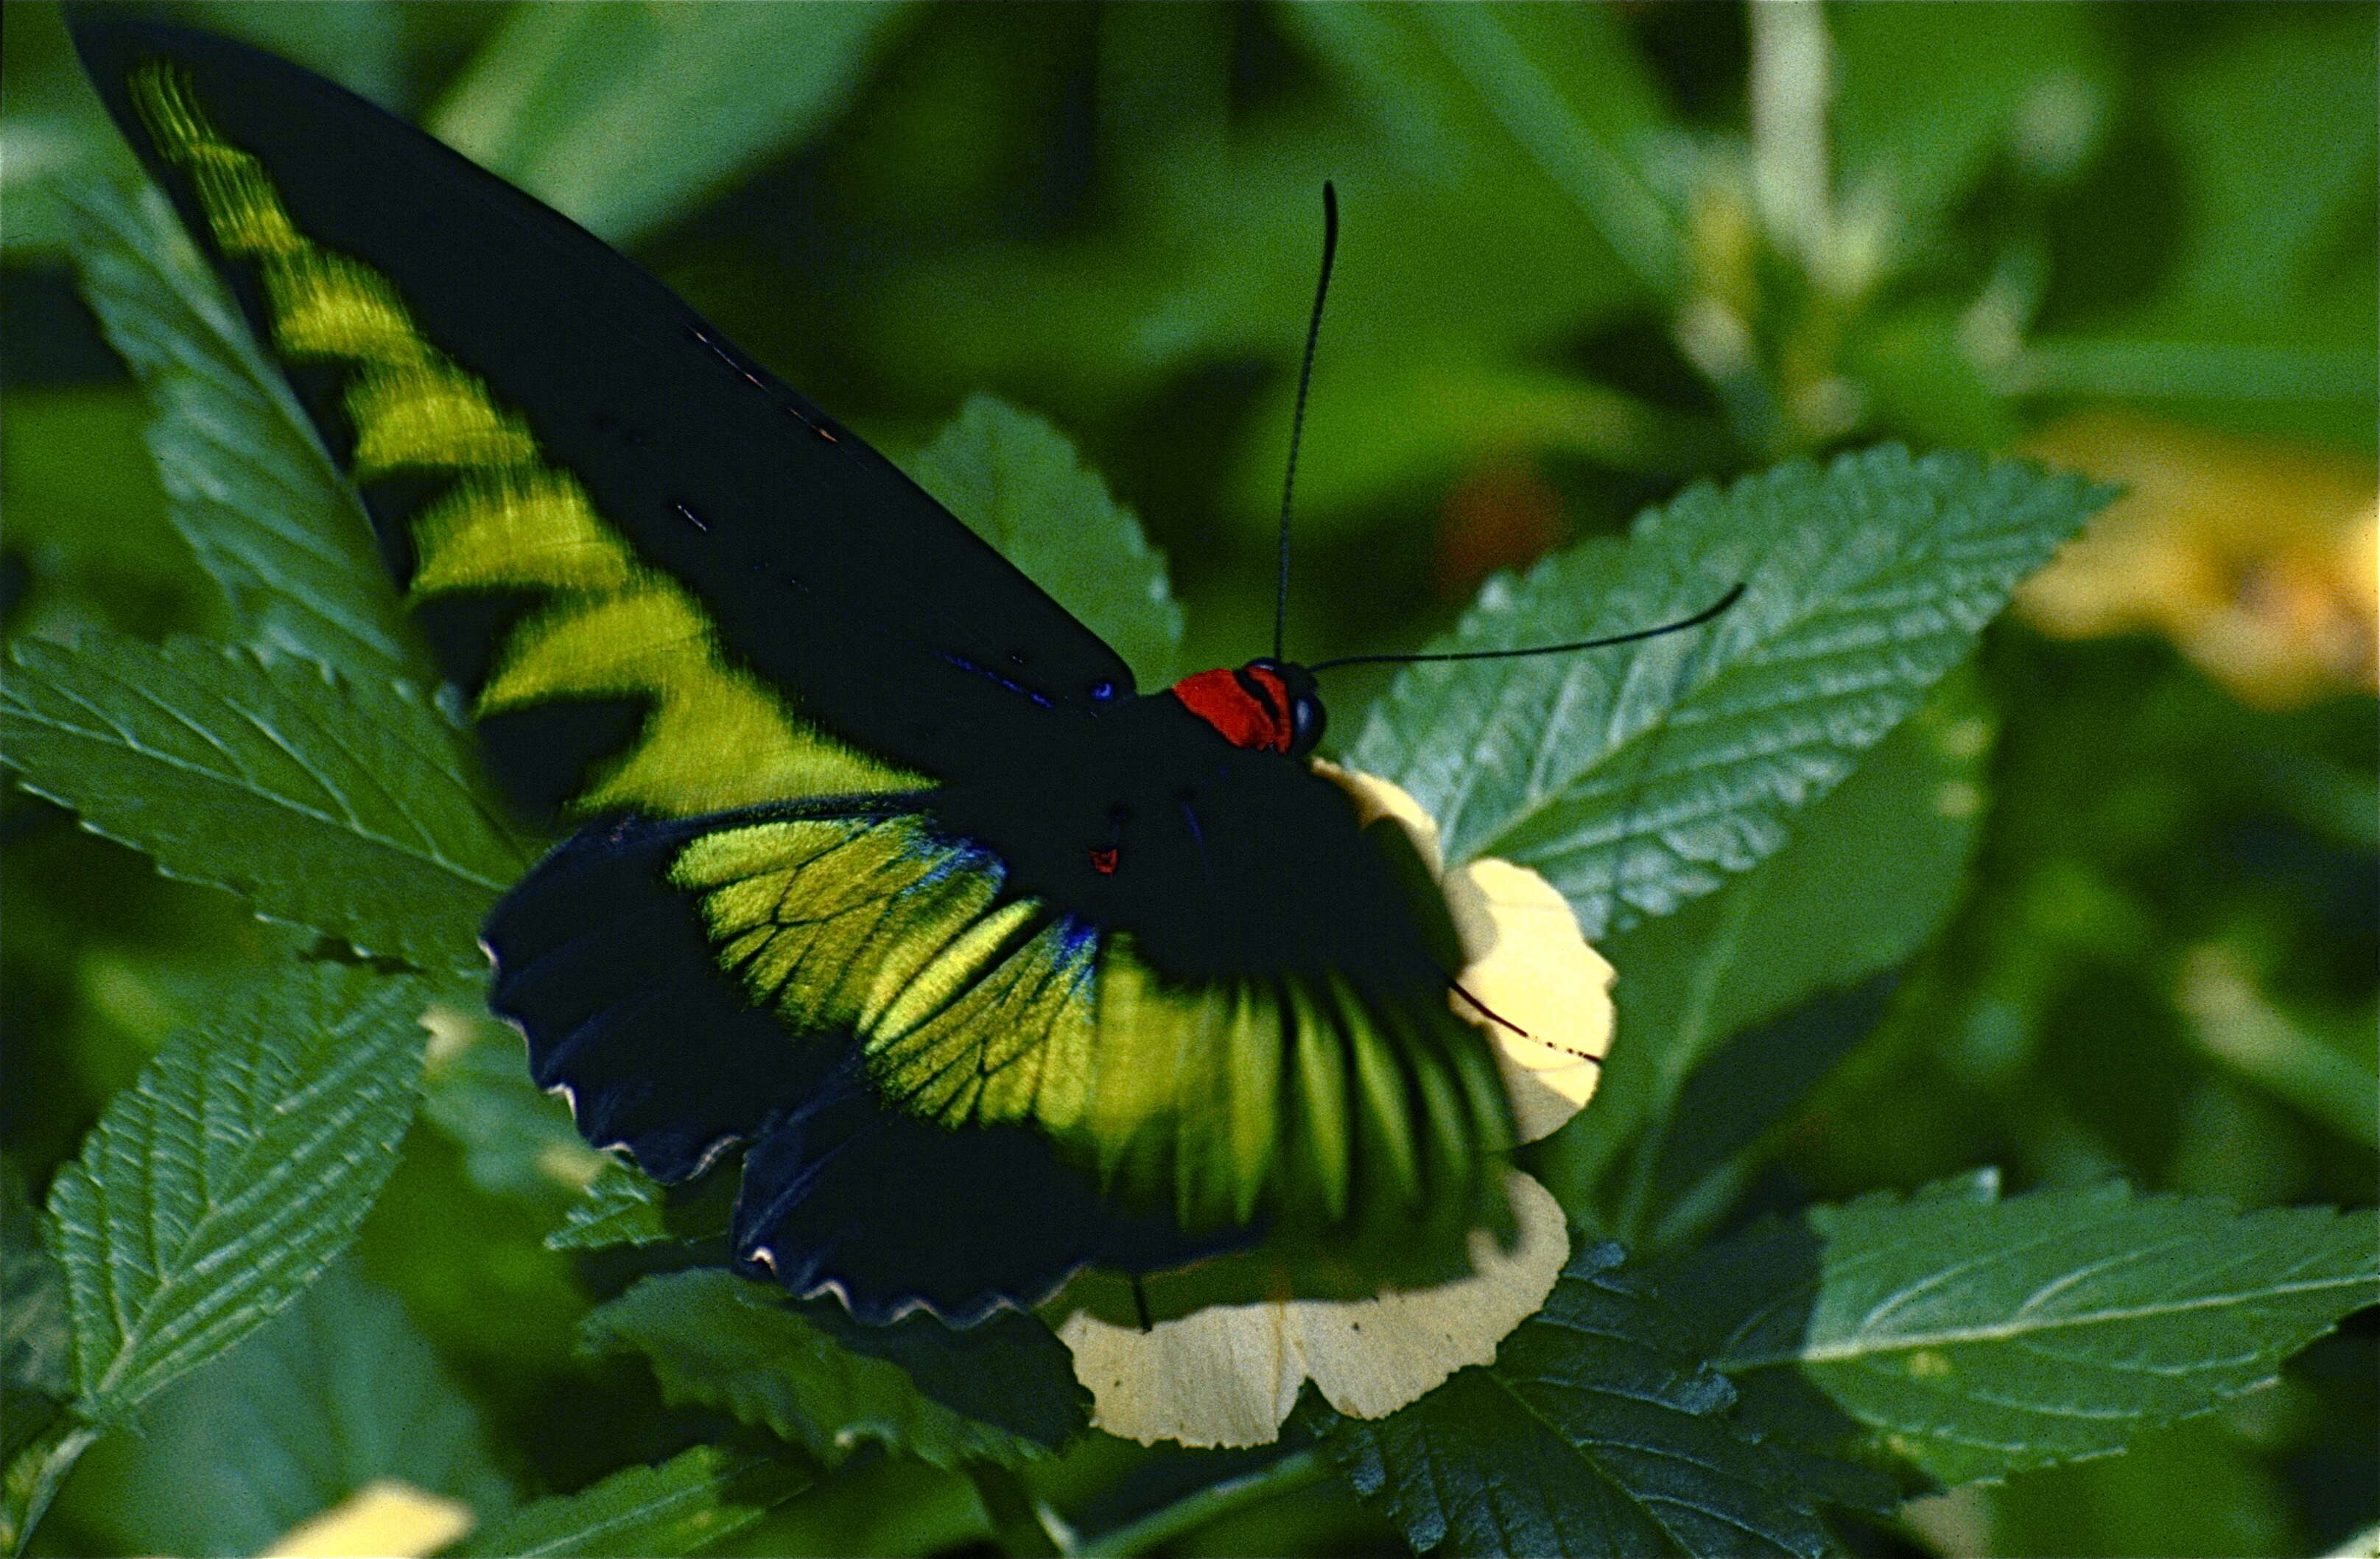 Image de Papilioninae